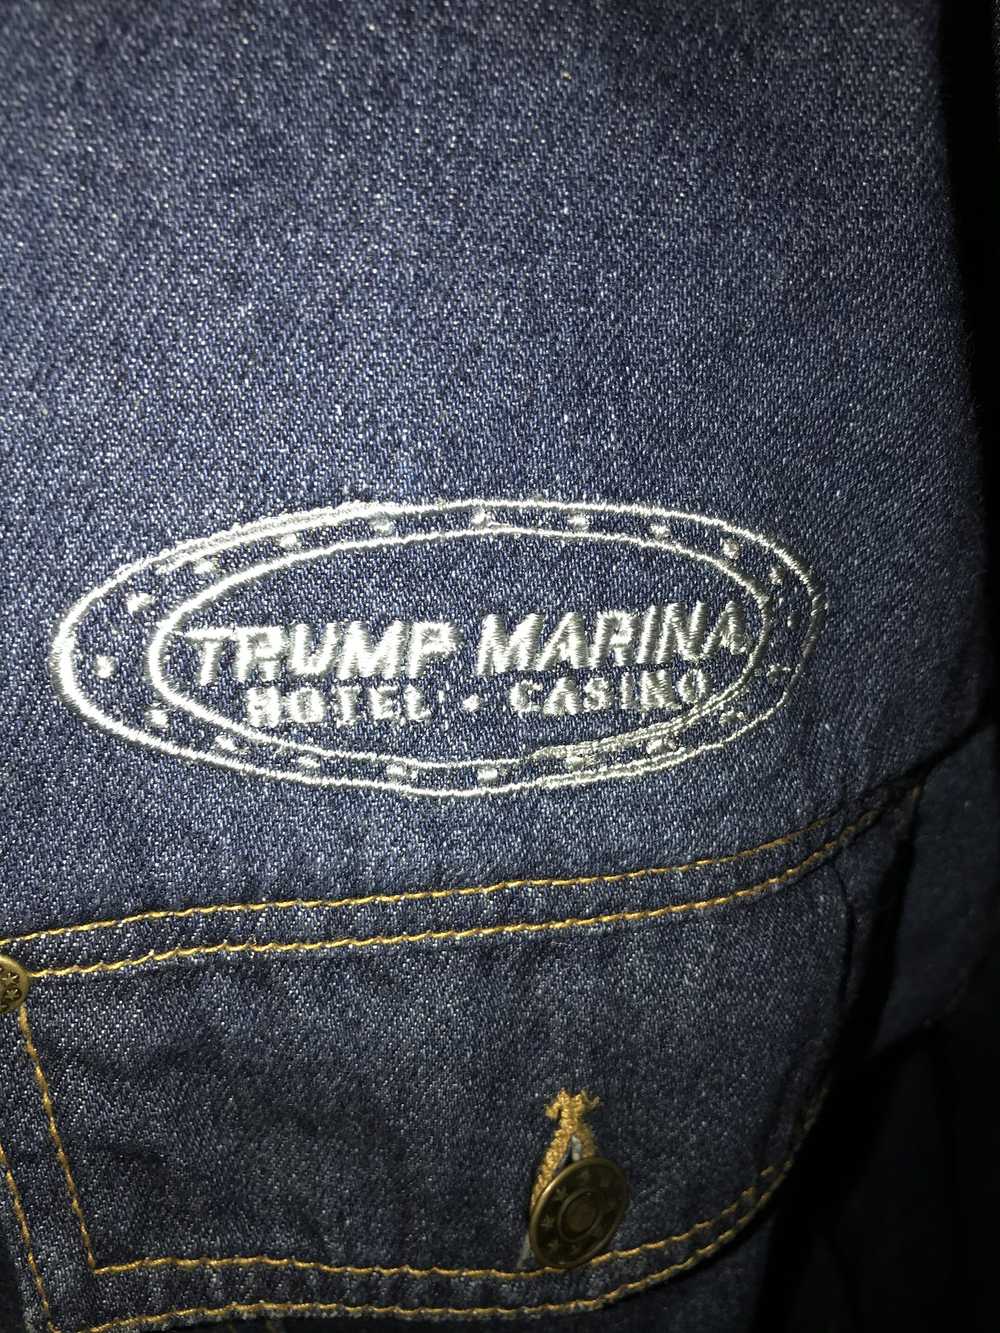 Vintage American Vintage Trump Marina Denim Jacket - image 2